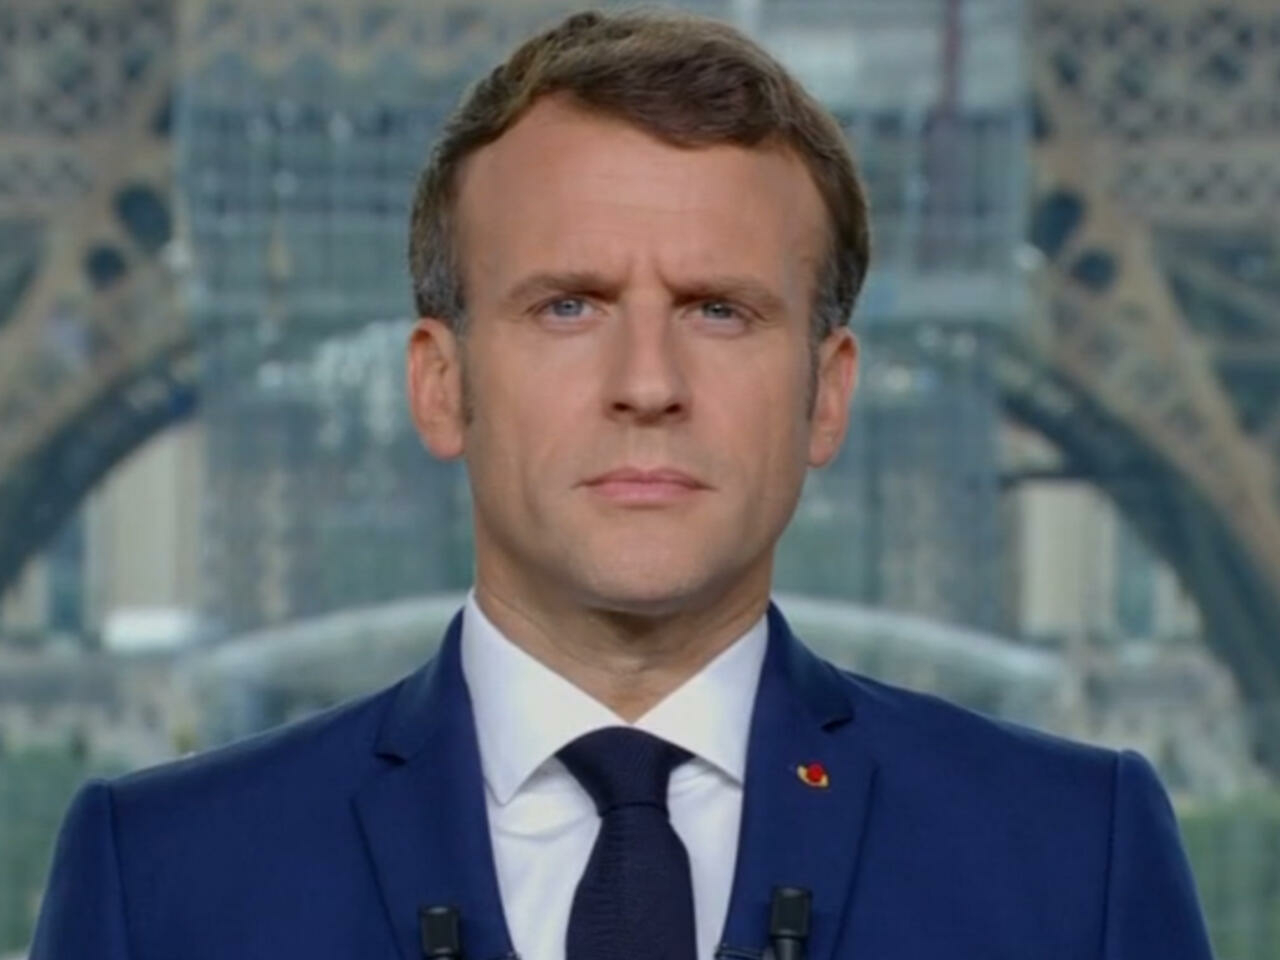 Emmanuel Macron portrait visage fermé Part1-Atlaneastro